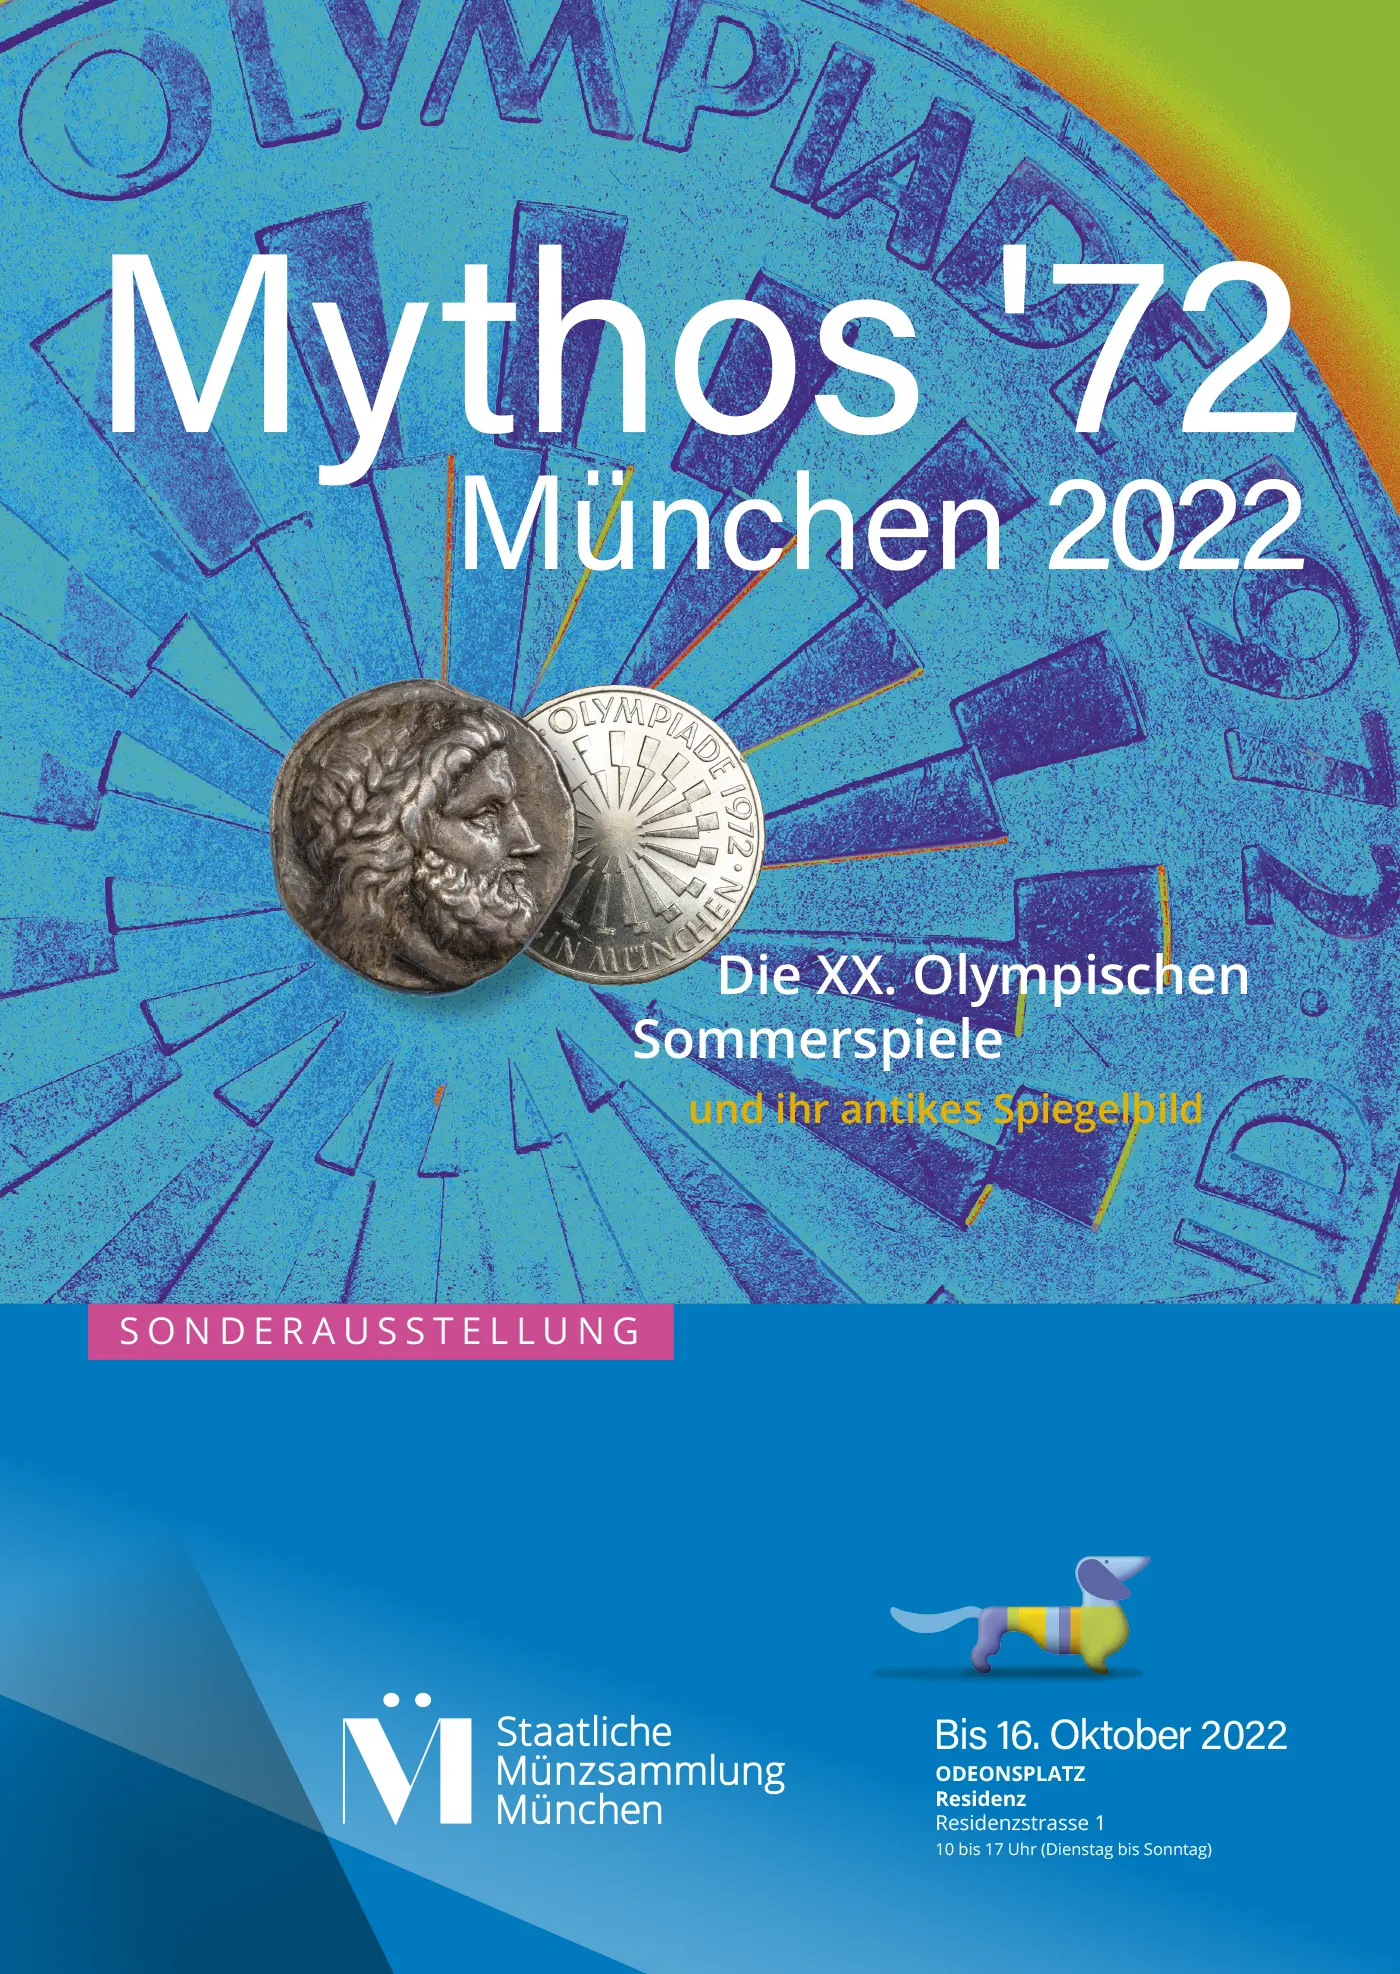 Key-Visual der Ausstellung in München Mythos-72. Plakat.